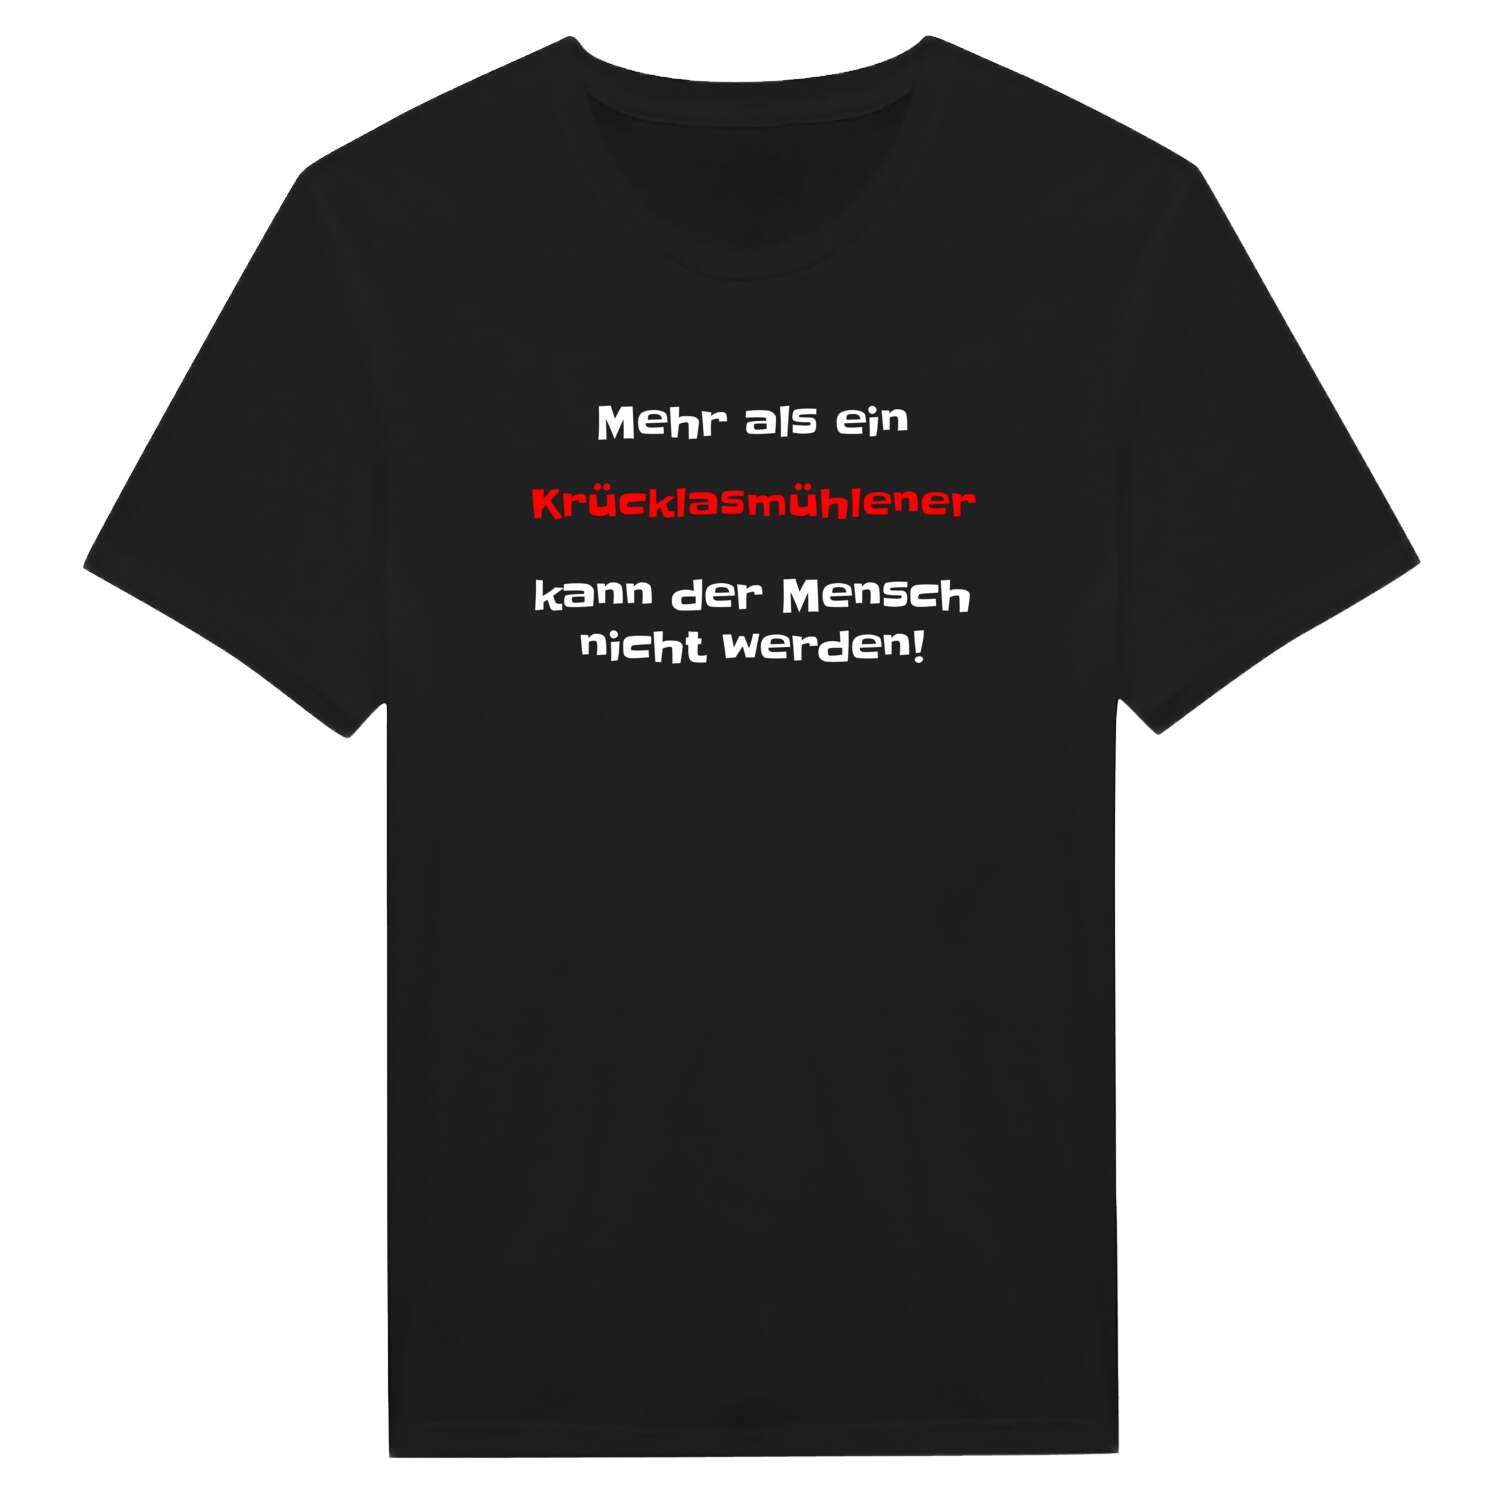 Krücklasmühle T-Shirt »Mehr als ein«